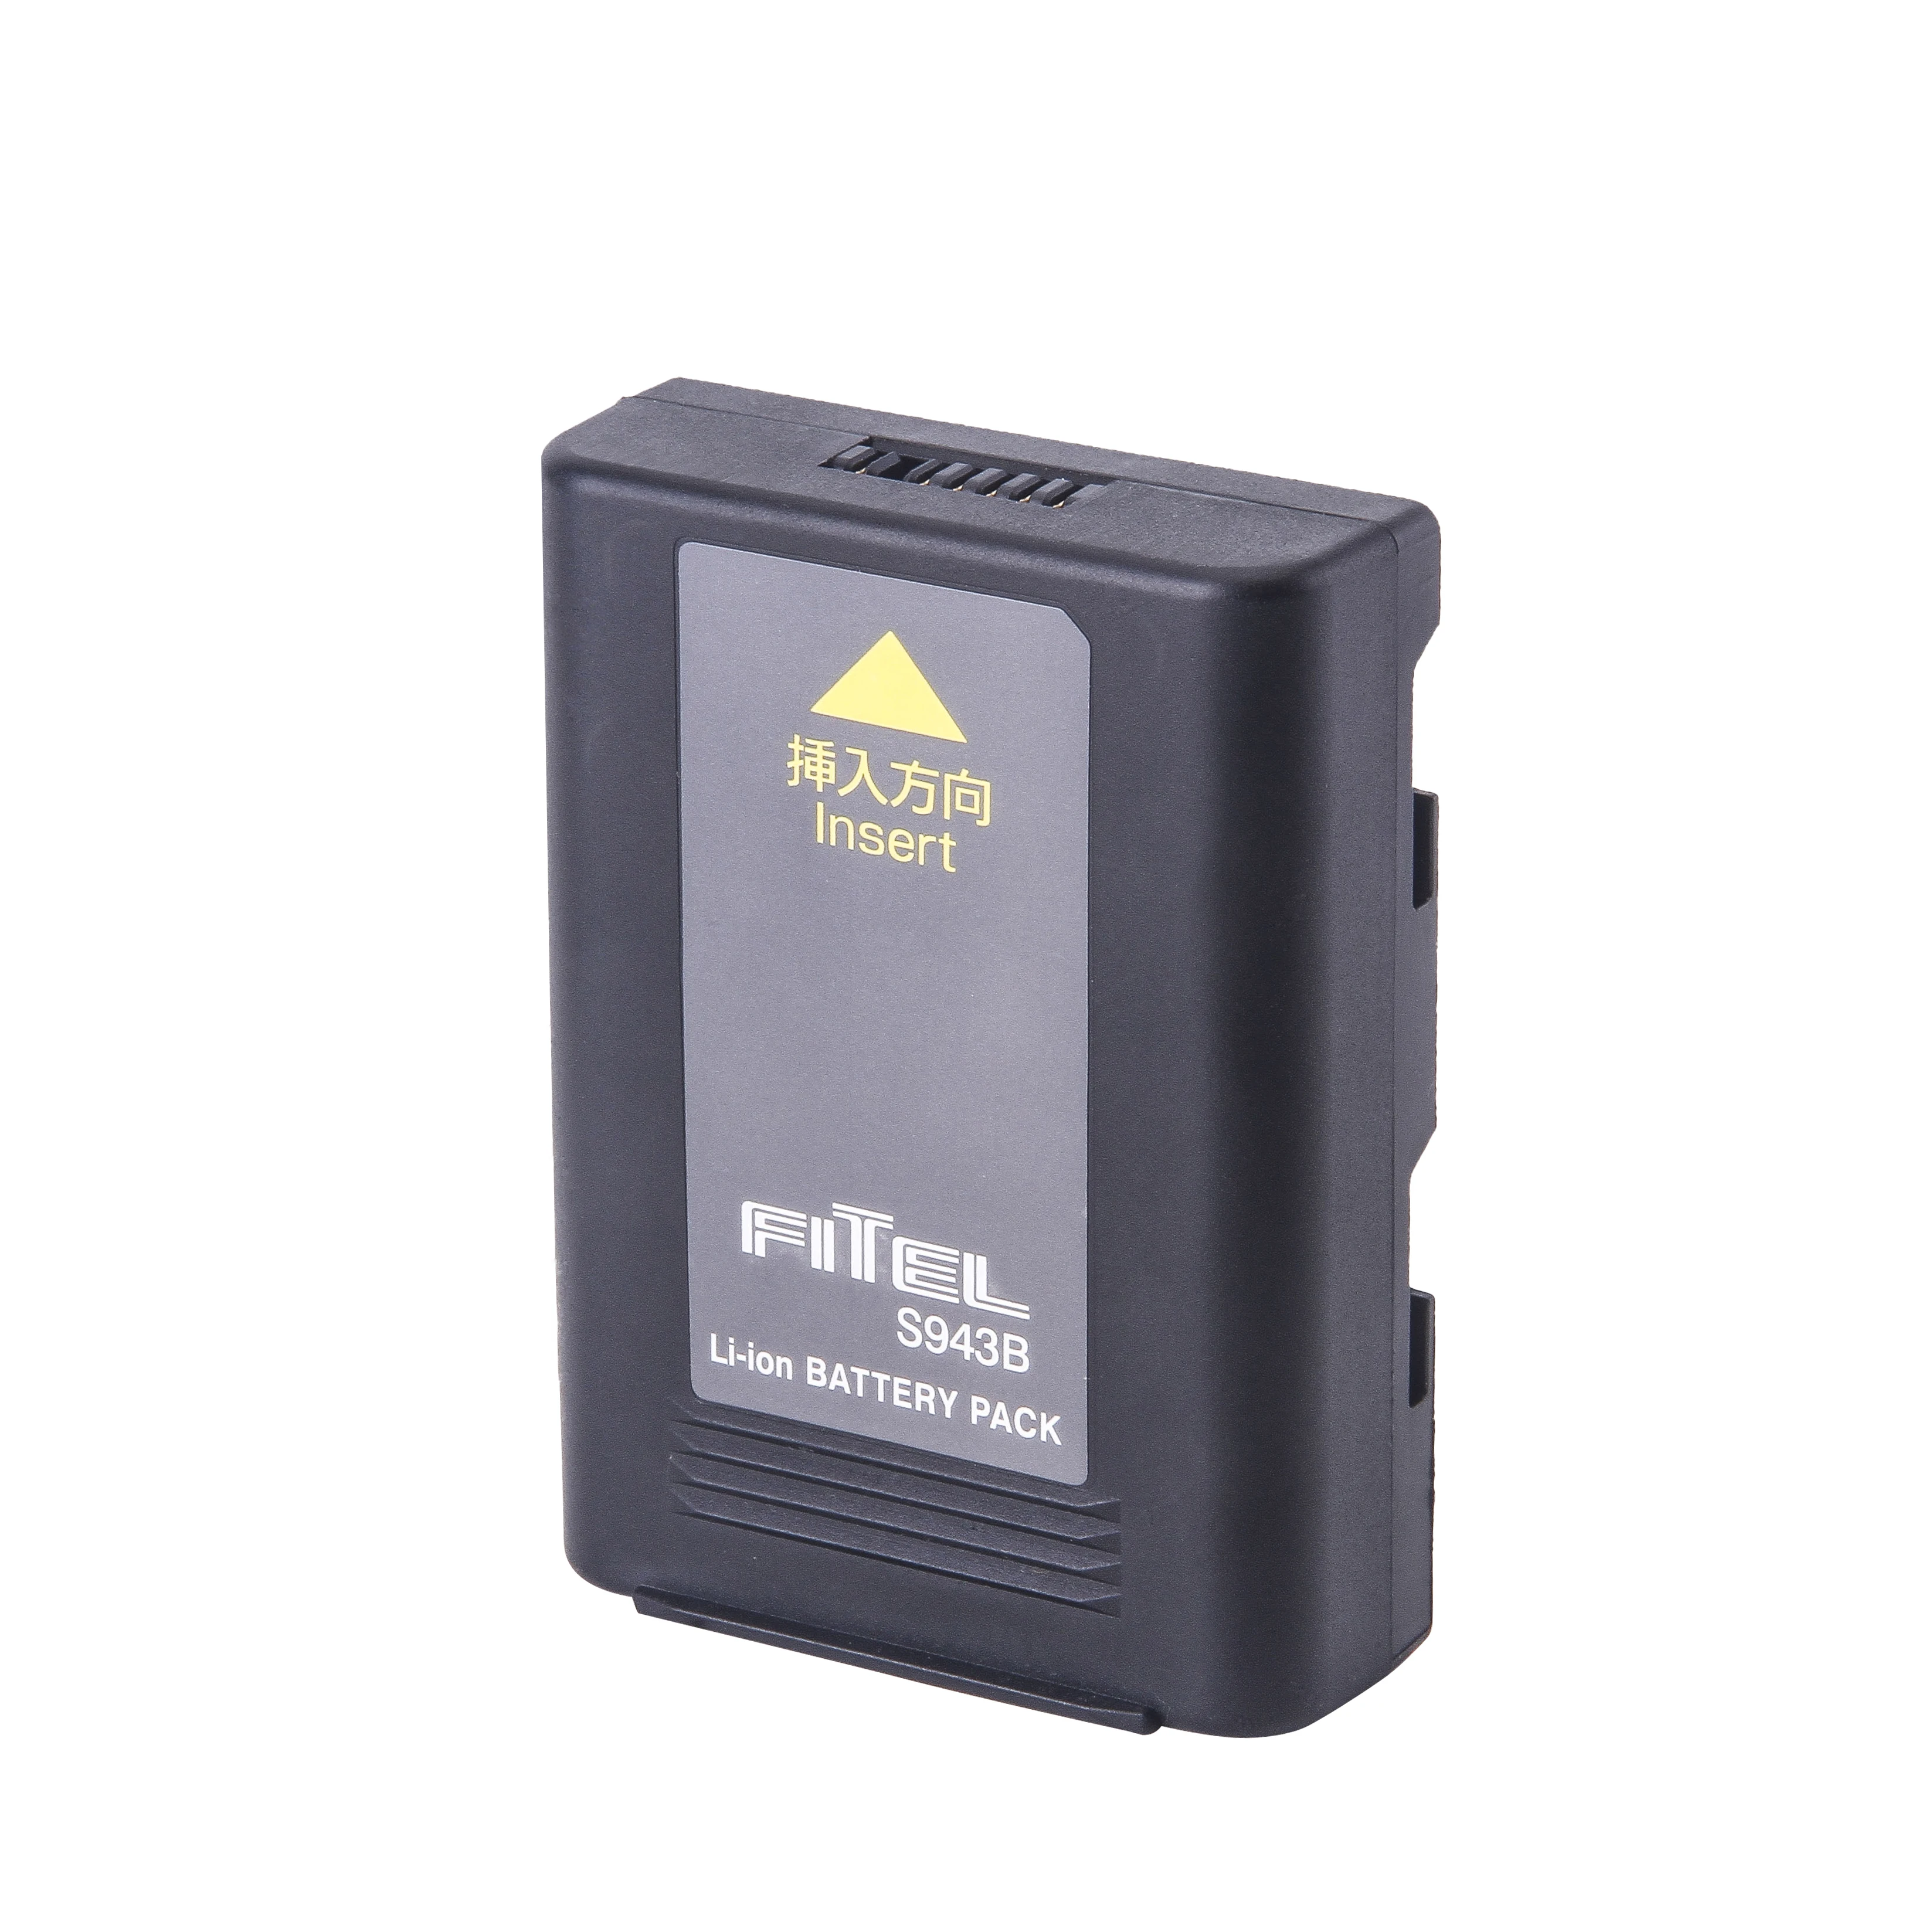 Высокое качество для Fitel S943 S943B S121A S121M4 S122A S122C S122M8 S123C S123CM8 S123C12 S153A S153V2 Батарея(с импортированными ячейками